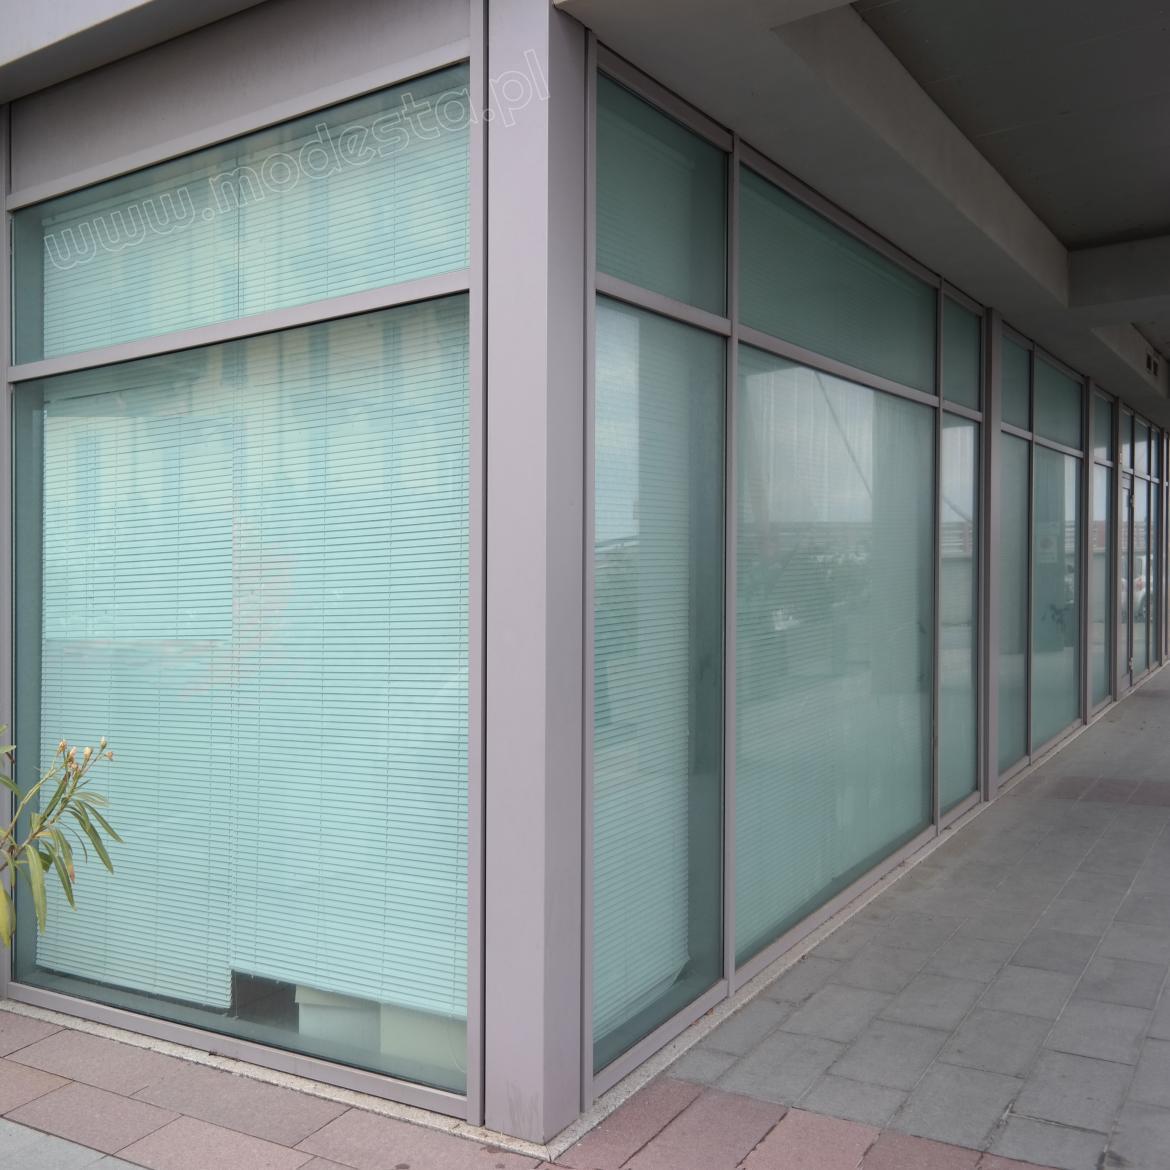 witryny zewnętrzne w systemie okienno-drzwiowym z profili aluminiowych